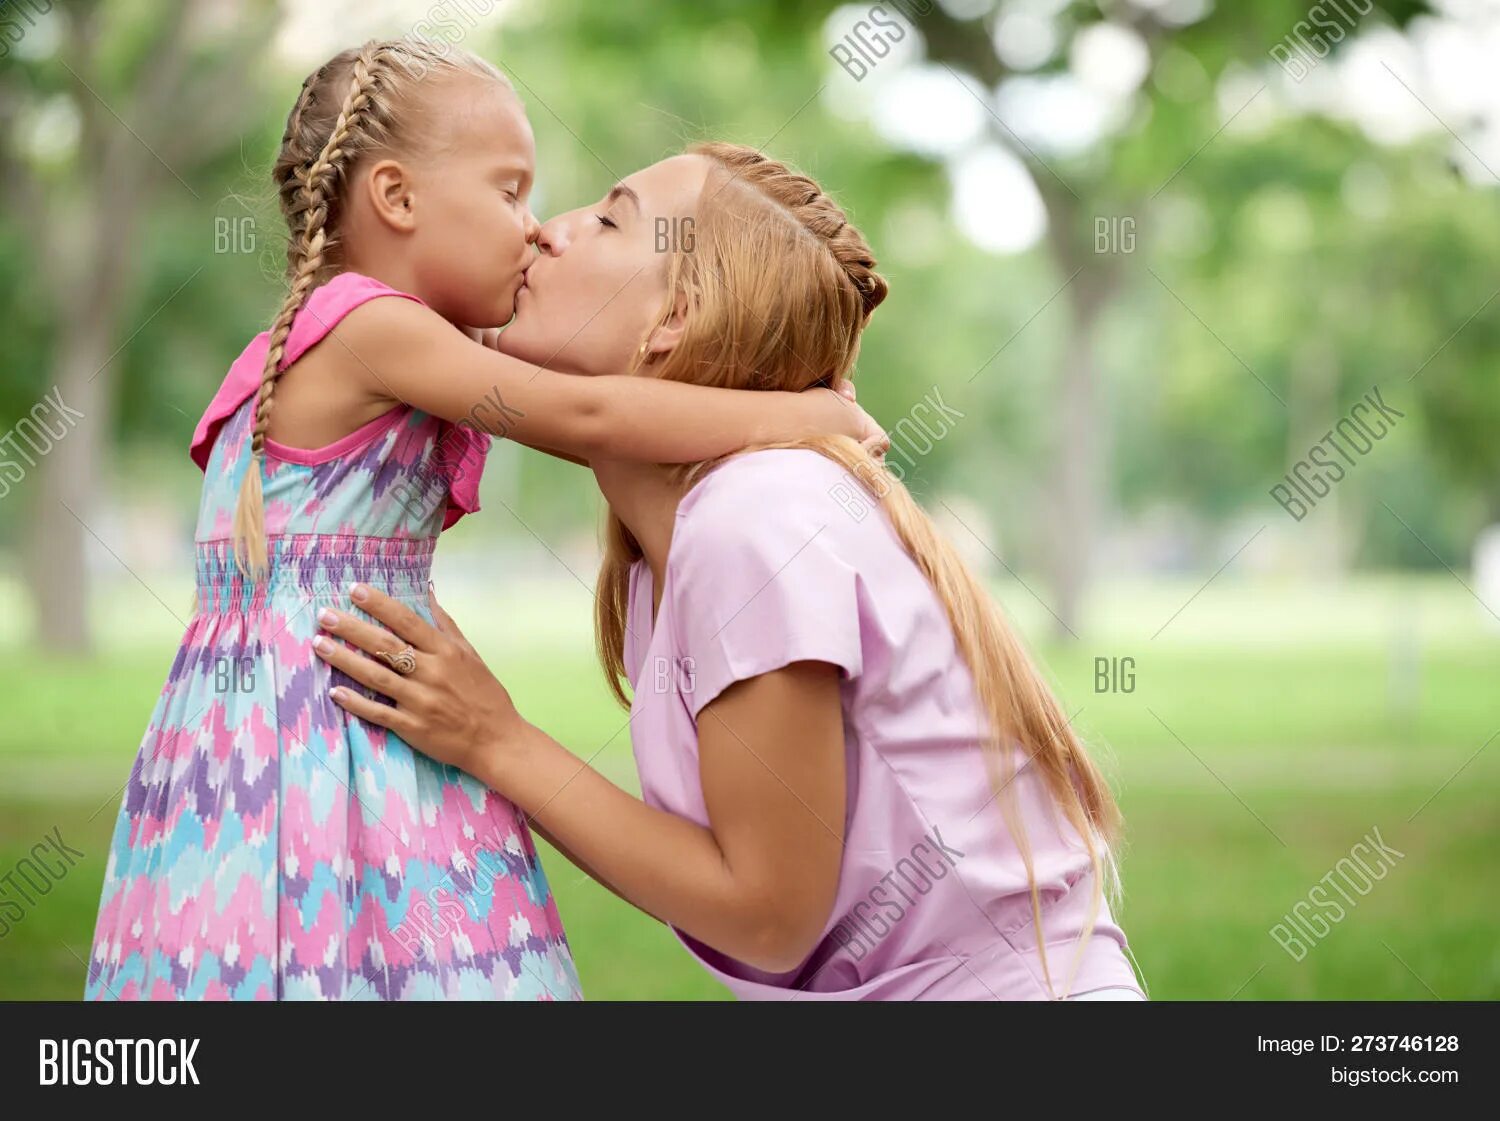 Мама с дочкой поцелуй. Мама целует дочку в губы. Поцелуй девочки с мамой. Мама целует дочку с языком. Moms girl lesbian